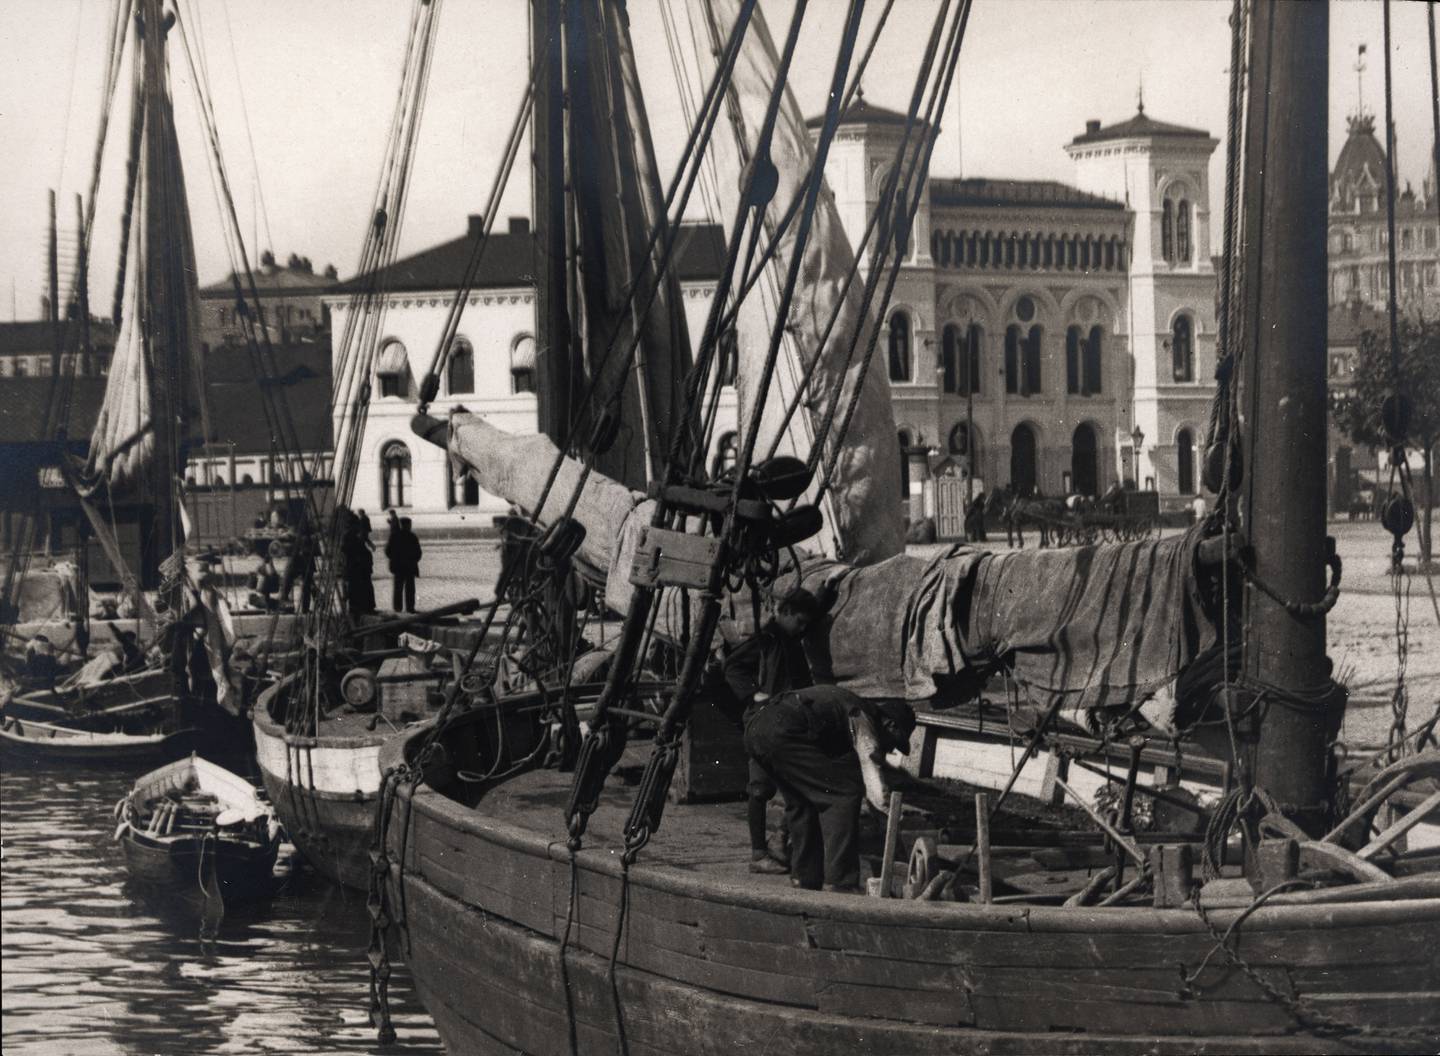 Båtene romanifolk/tatere reiste med var mellomstore båter med seil, kalt jakter eller skøyter, av fastboende gjerne kalt «taterjakter». Her kunne hele familier bo. Bildet viser en skøyte med romanifolk ved Vestbanen 1919.